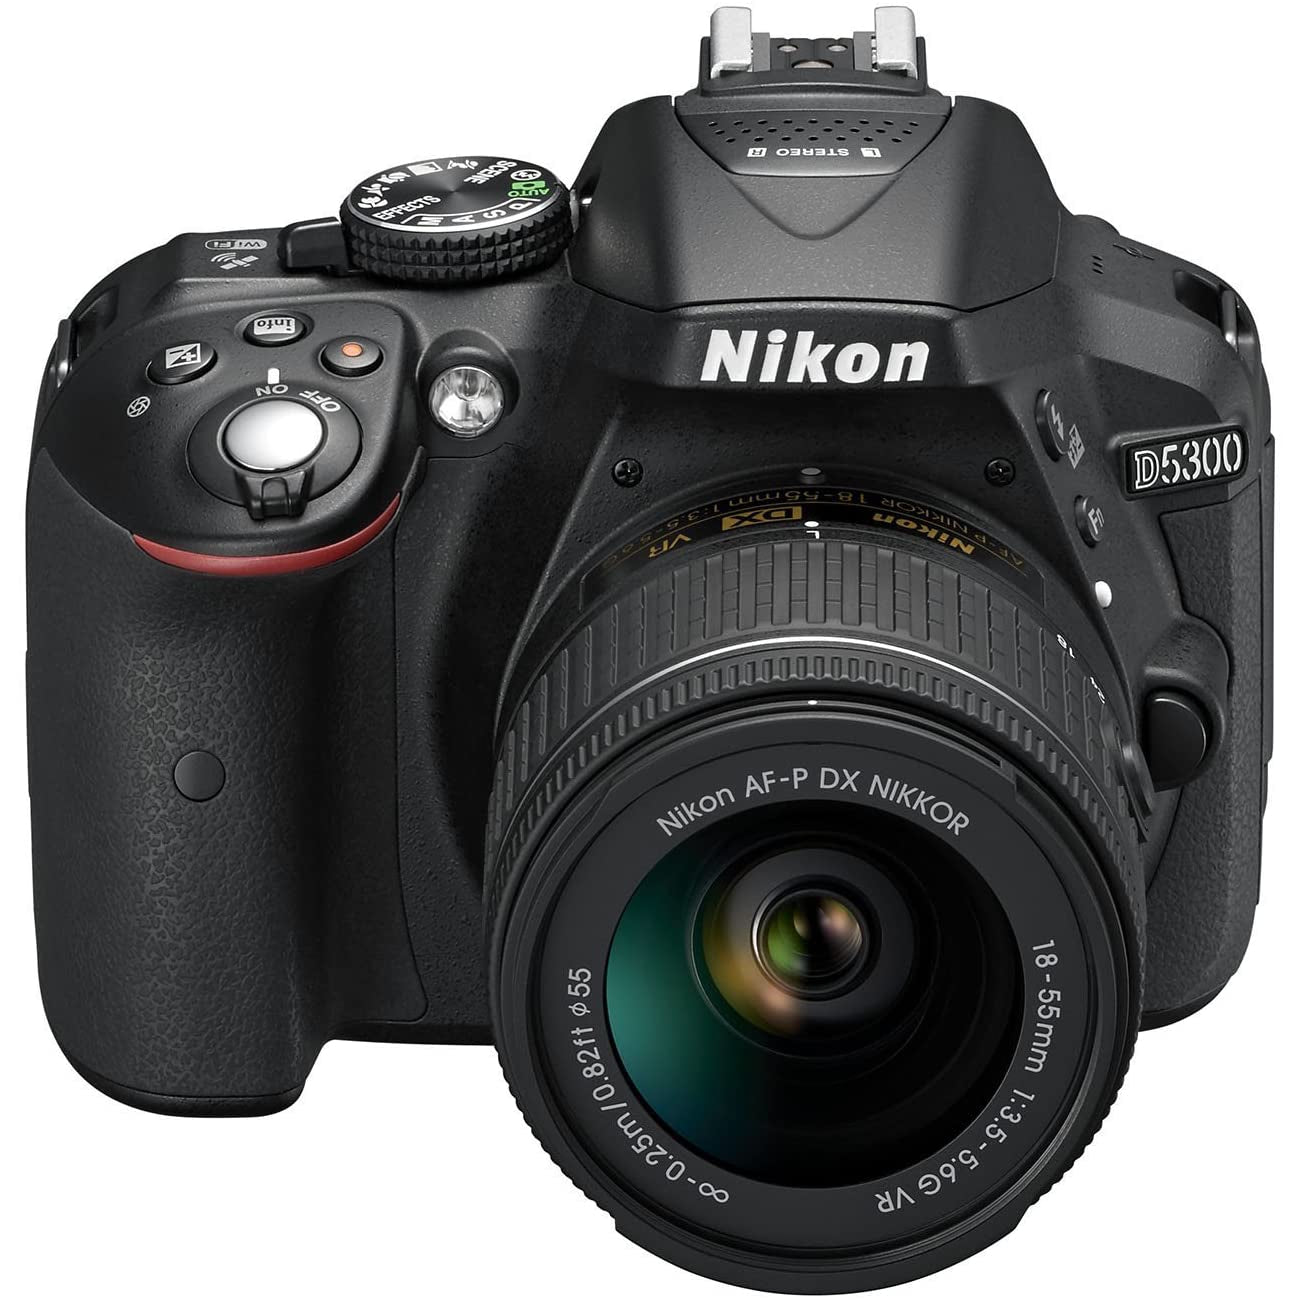 Nikon D5300 DSLR Camera in Black